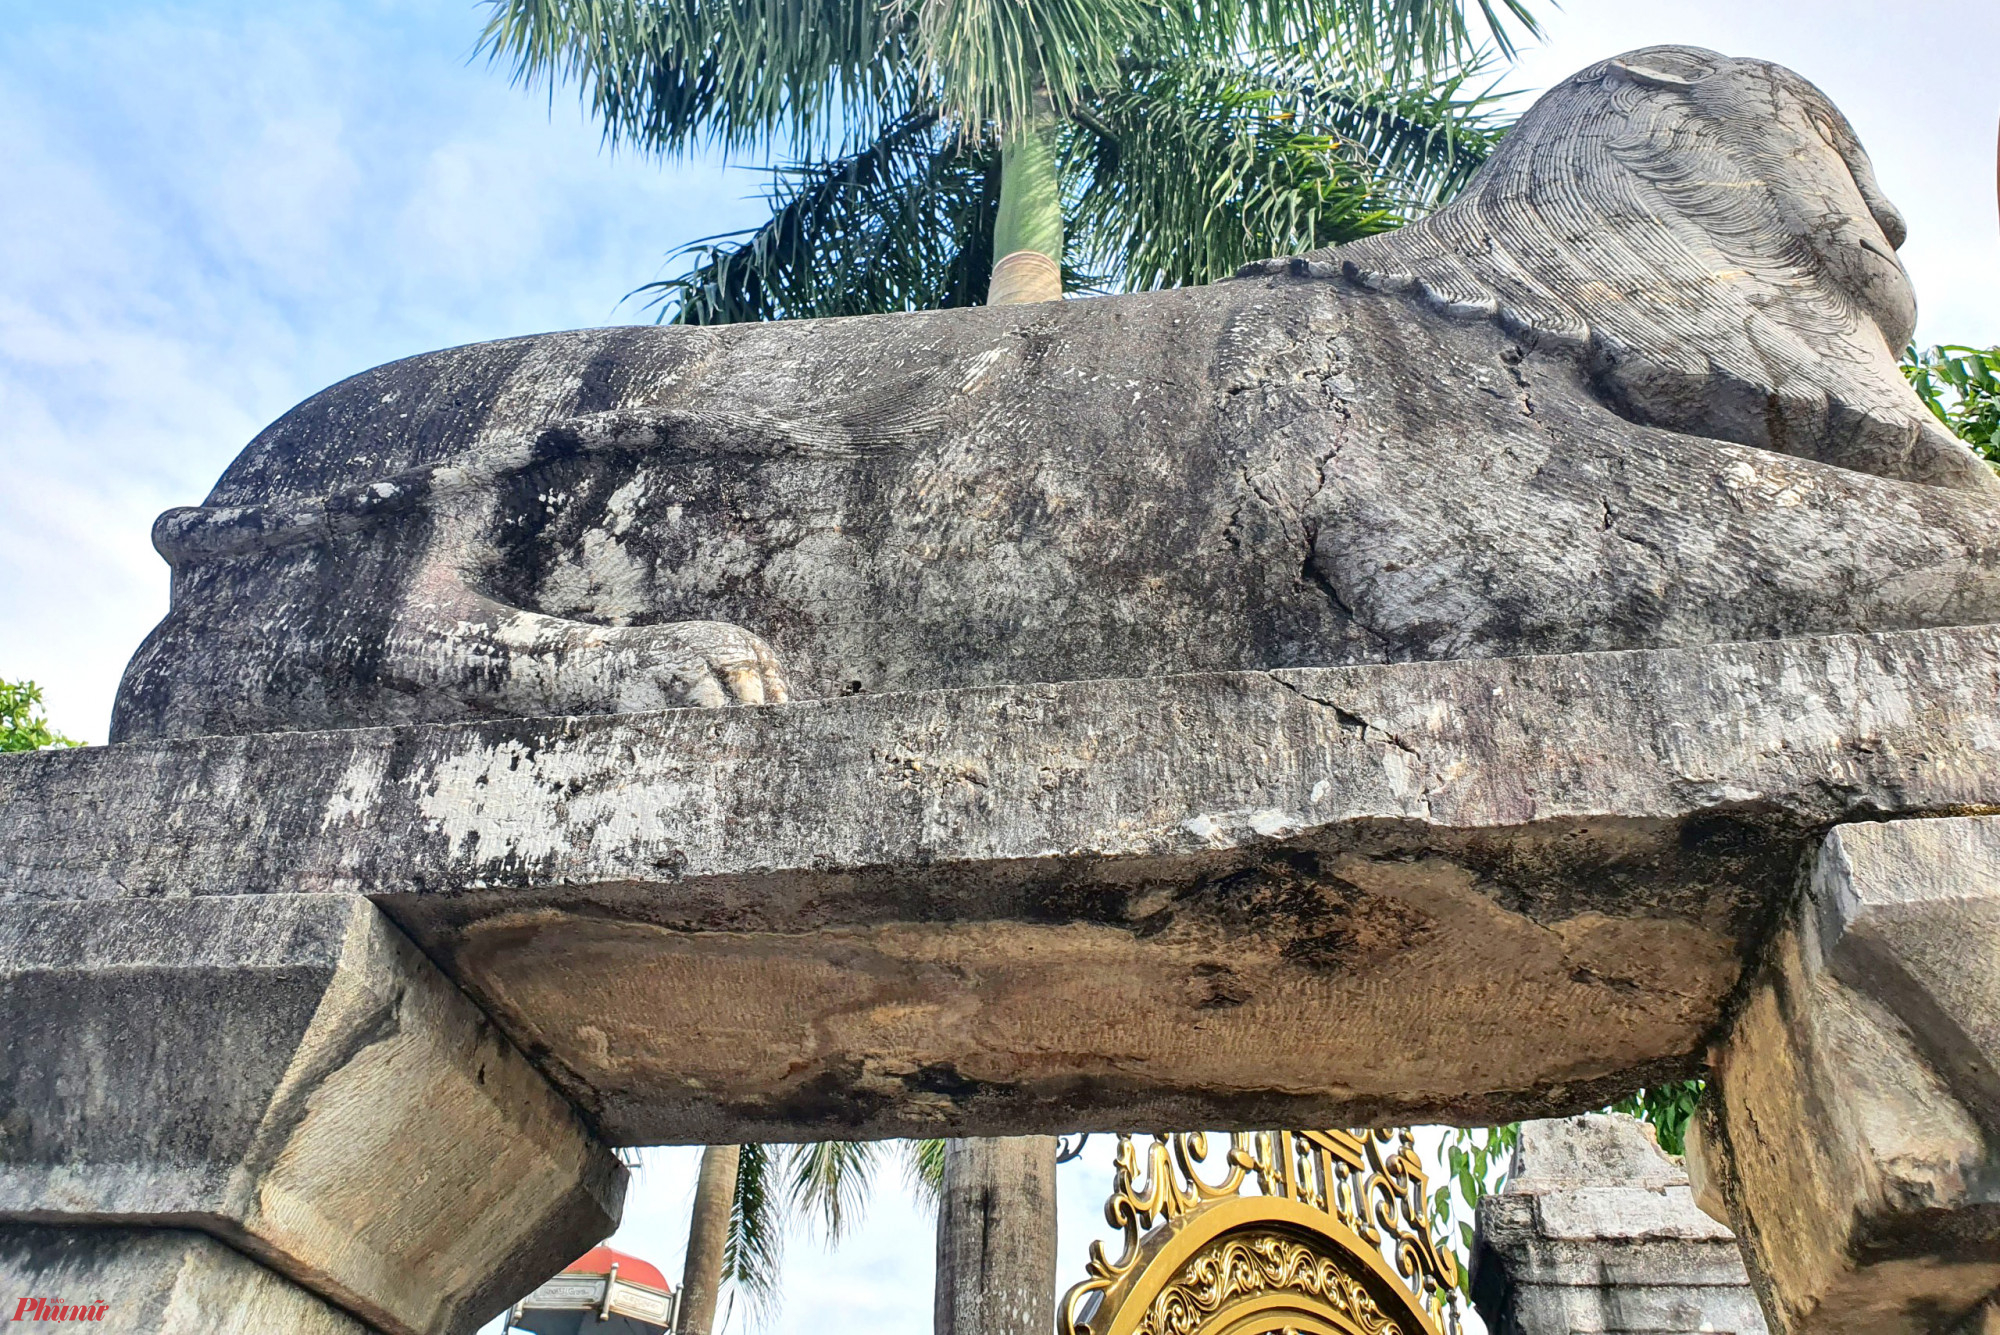 Điểm nhấn của nhà thờ là một cột thu lôi có hình một con gà, được làm bằng chất liệu hợp kim antimon với khả năng xoay theo chiều gió. Cổng chào phía trước nhà thời cũng được làm bằng đá, bên trên đặt tượng hai con sư tử bằng đá được chạm khắc tinh tế. 